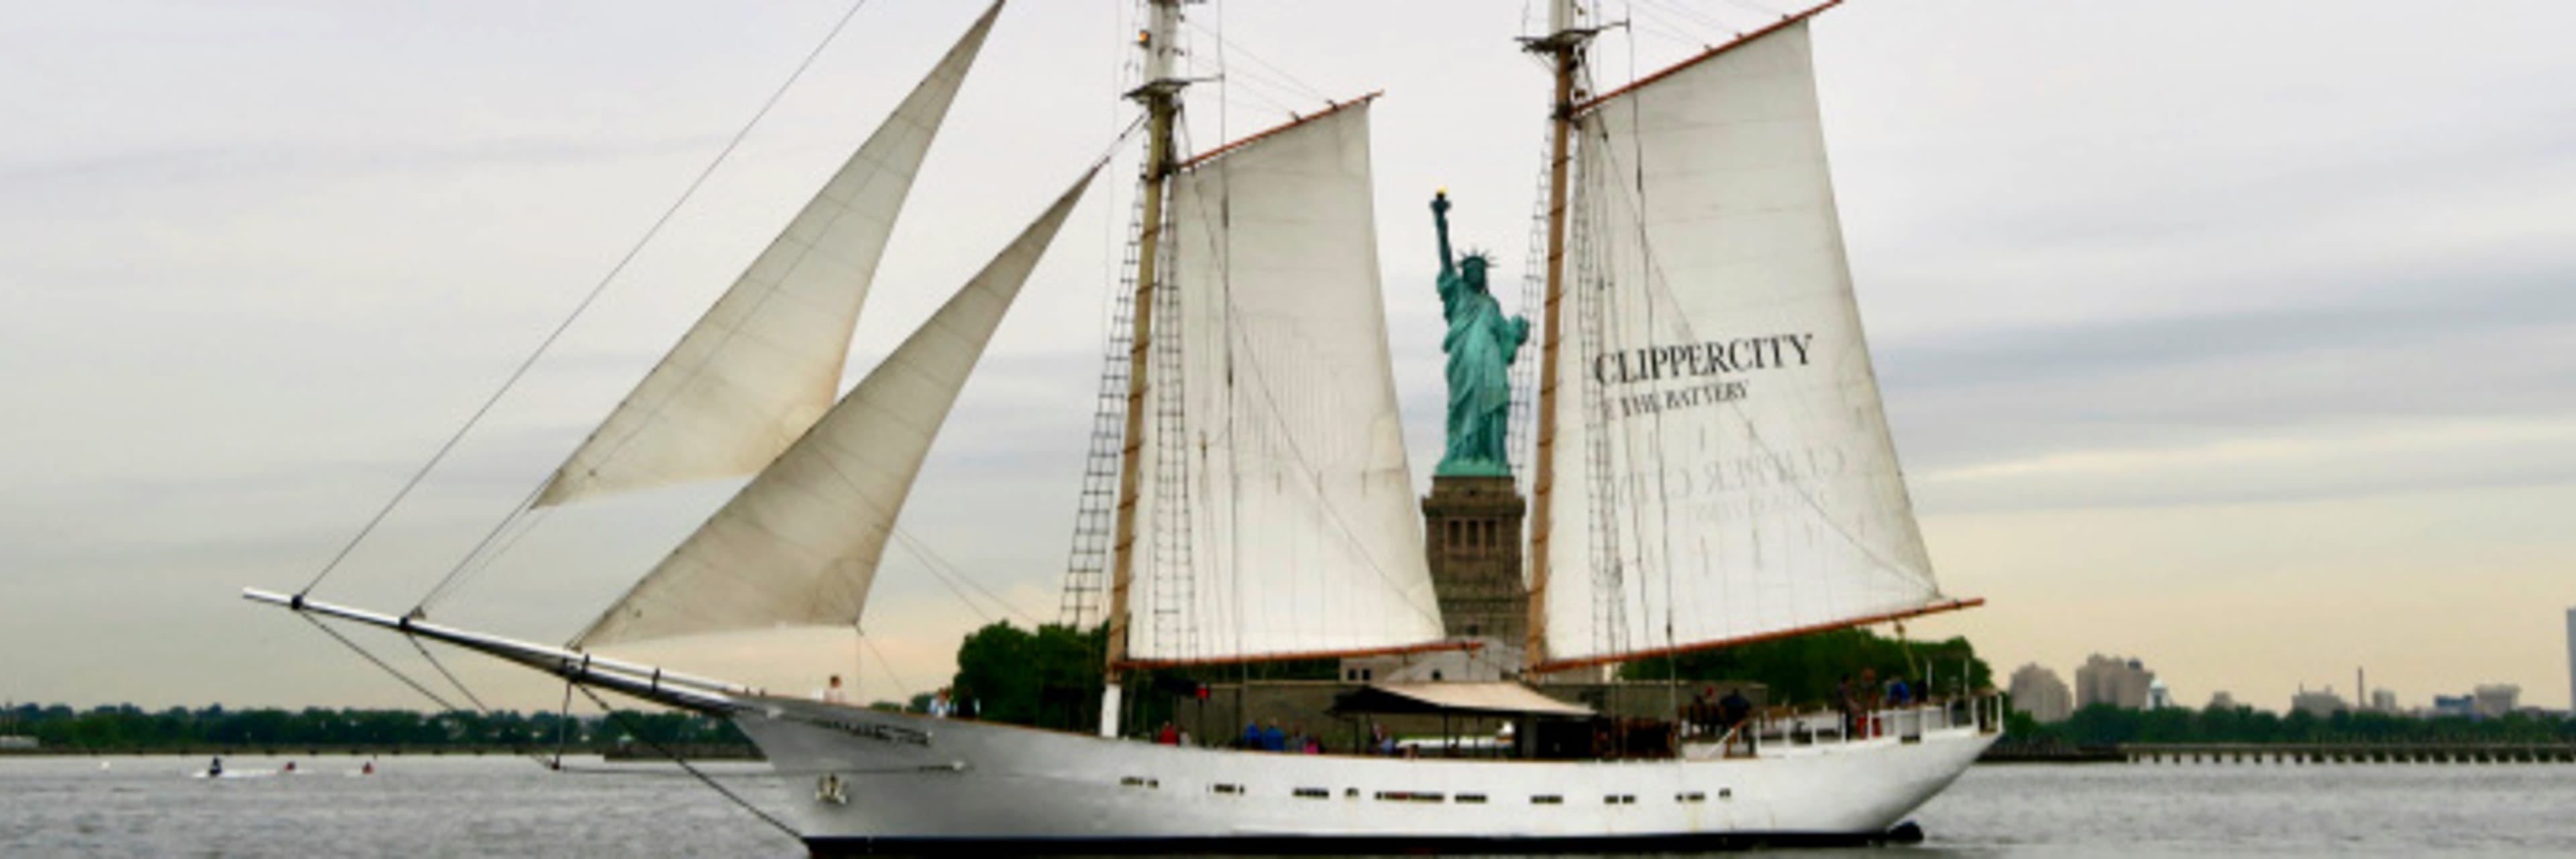 Clipper city Tall ship | New York Explorer Pass